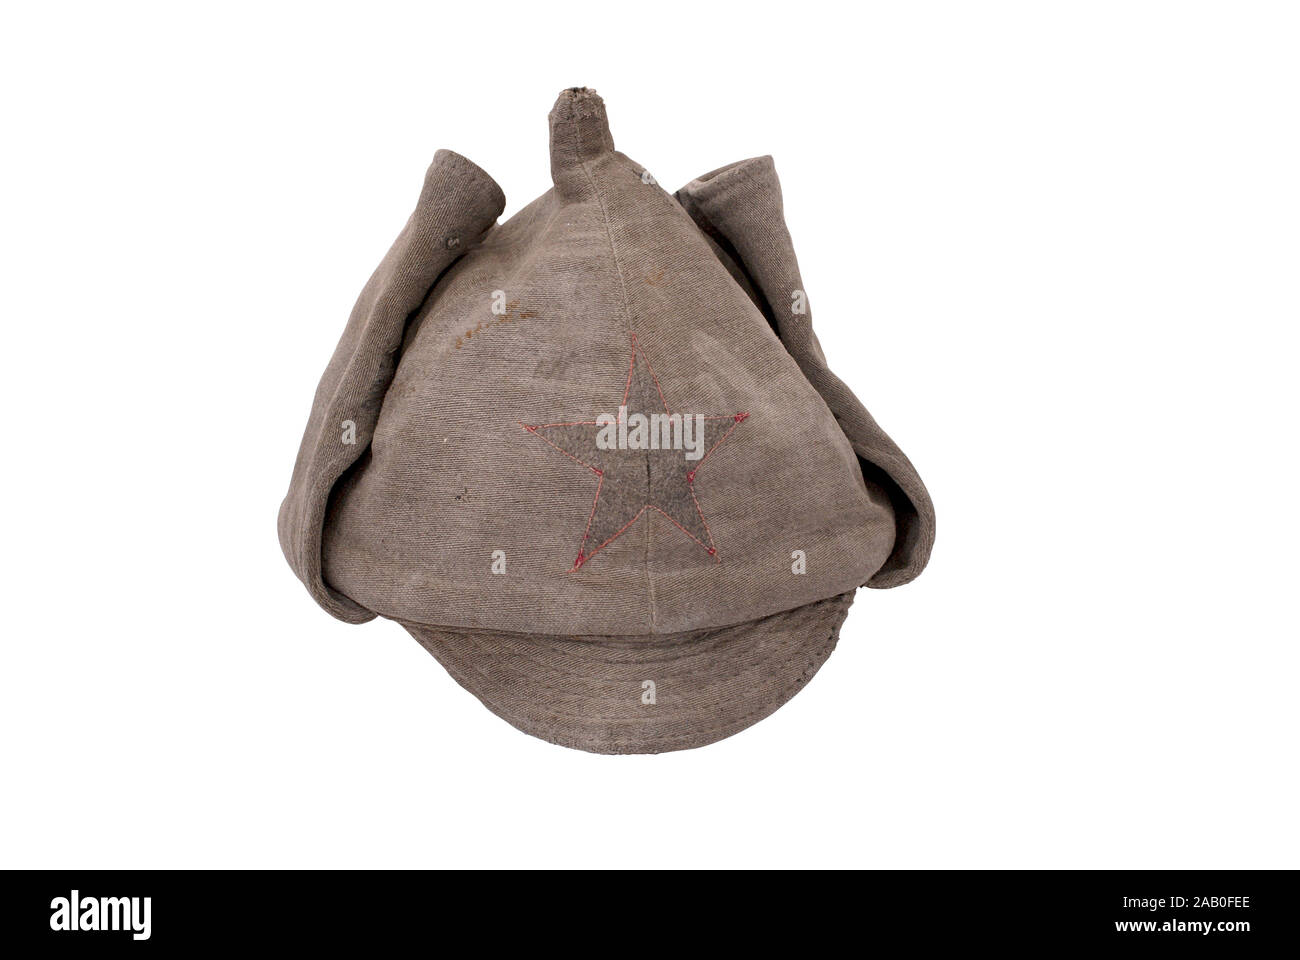 Urss (Russia) della storia. Urss cappello militare Budenny (cap) - ha sottolineato il casco già indossata da Red Army Men. 1933. La Russia. Foto Stock